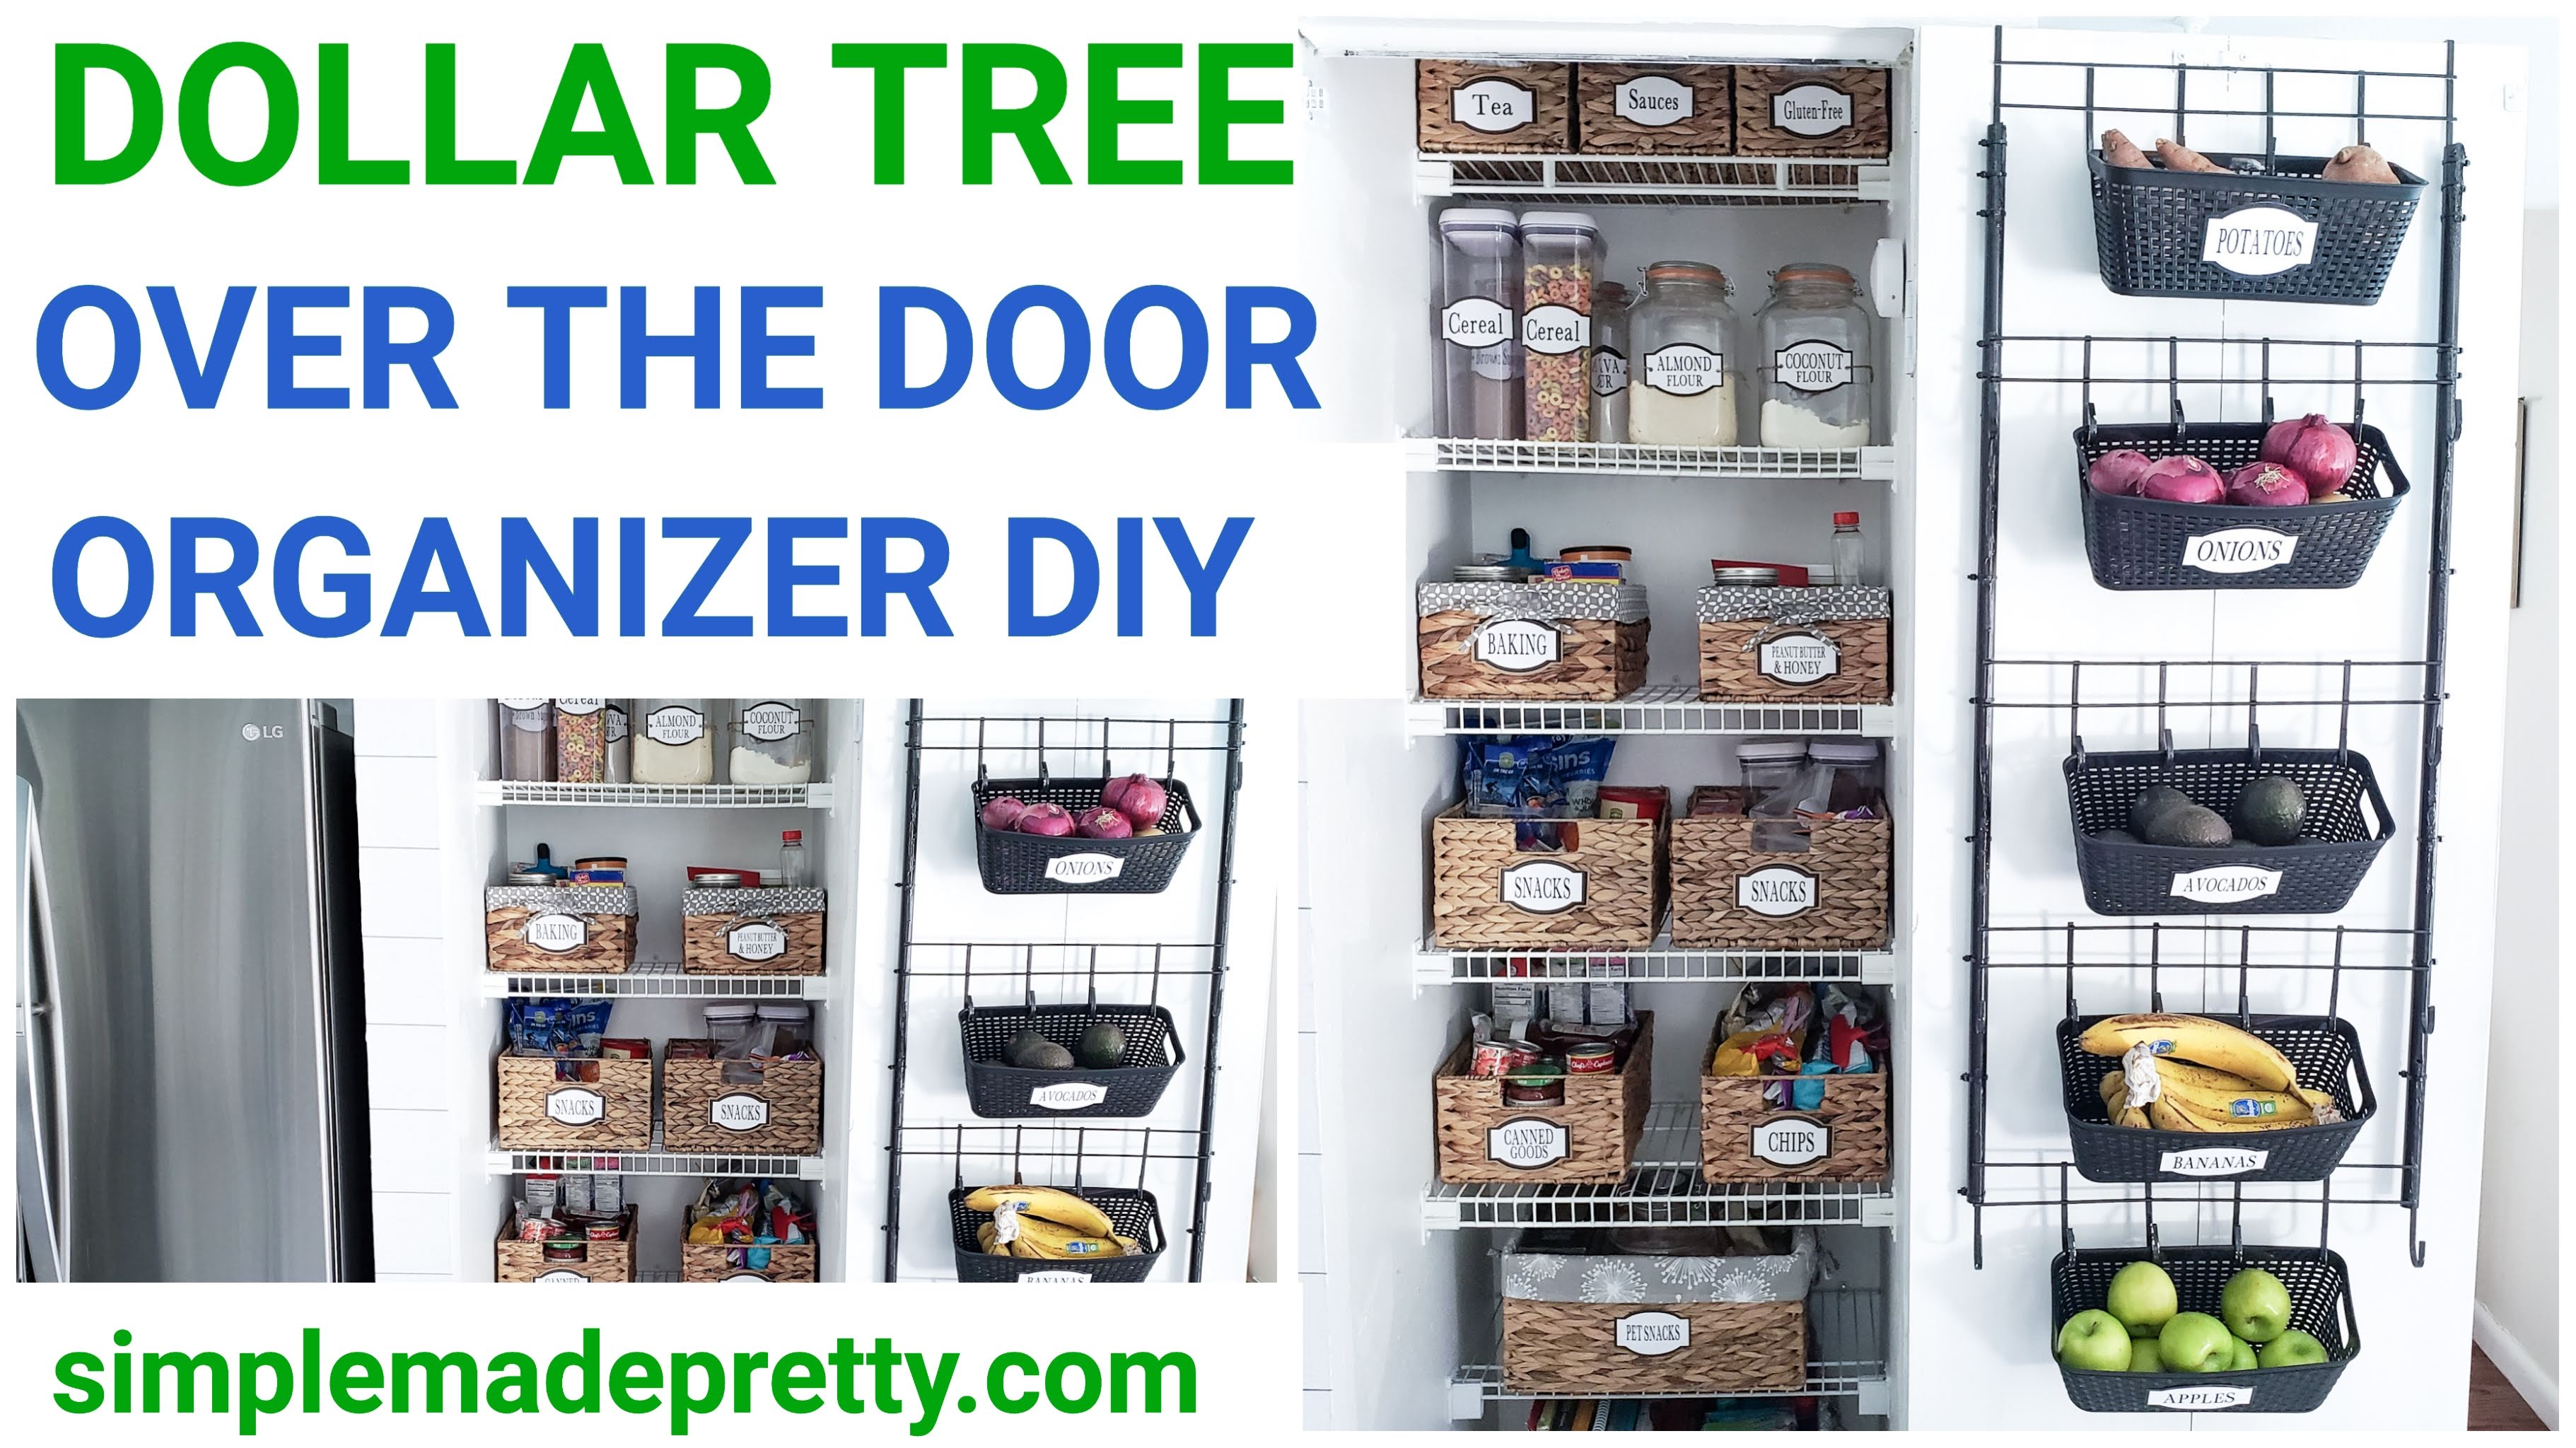 https://simplemadepretty.com/wp-content/uploads/2019/08/Dollar-Tree-DIY-Over-the-door-organizer.jpg